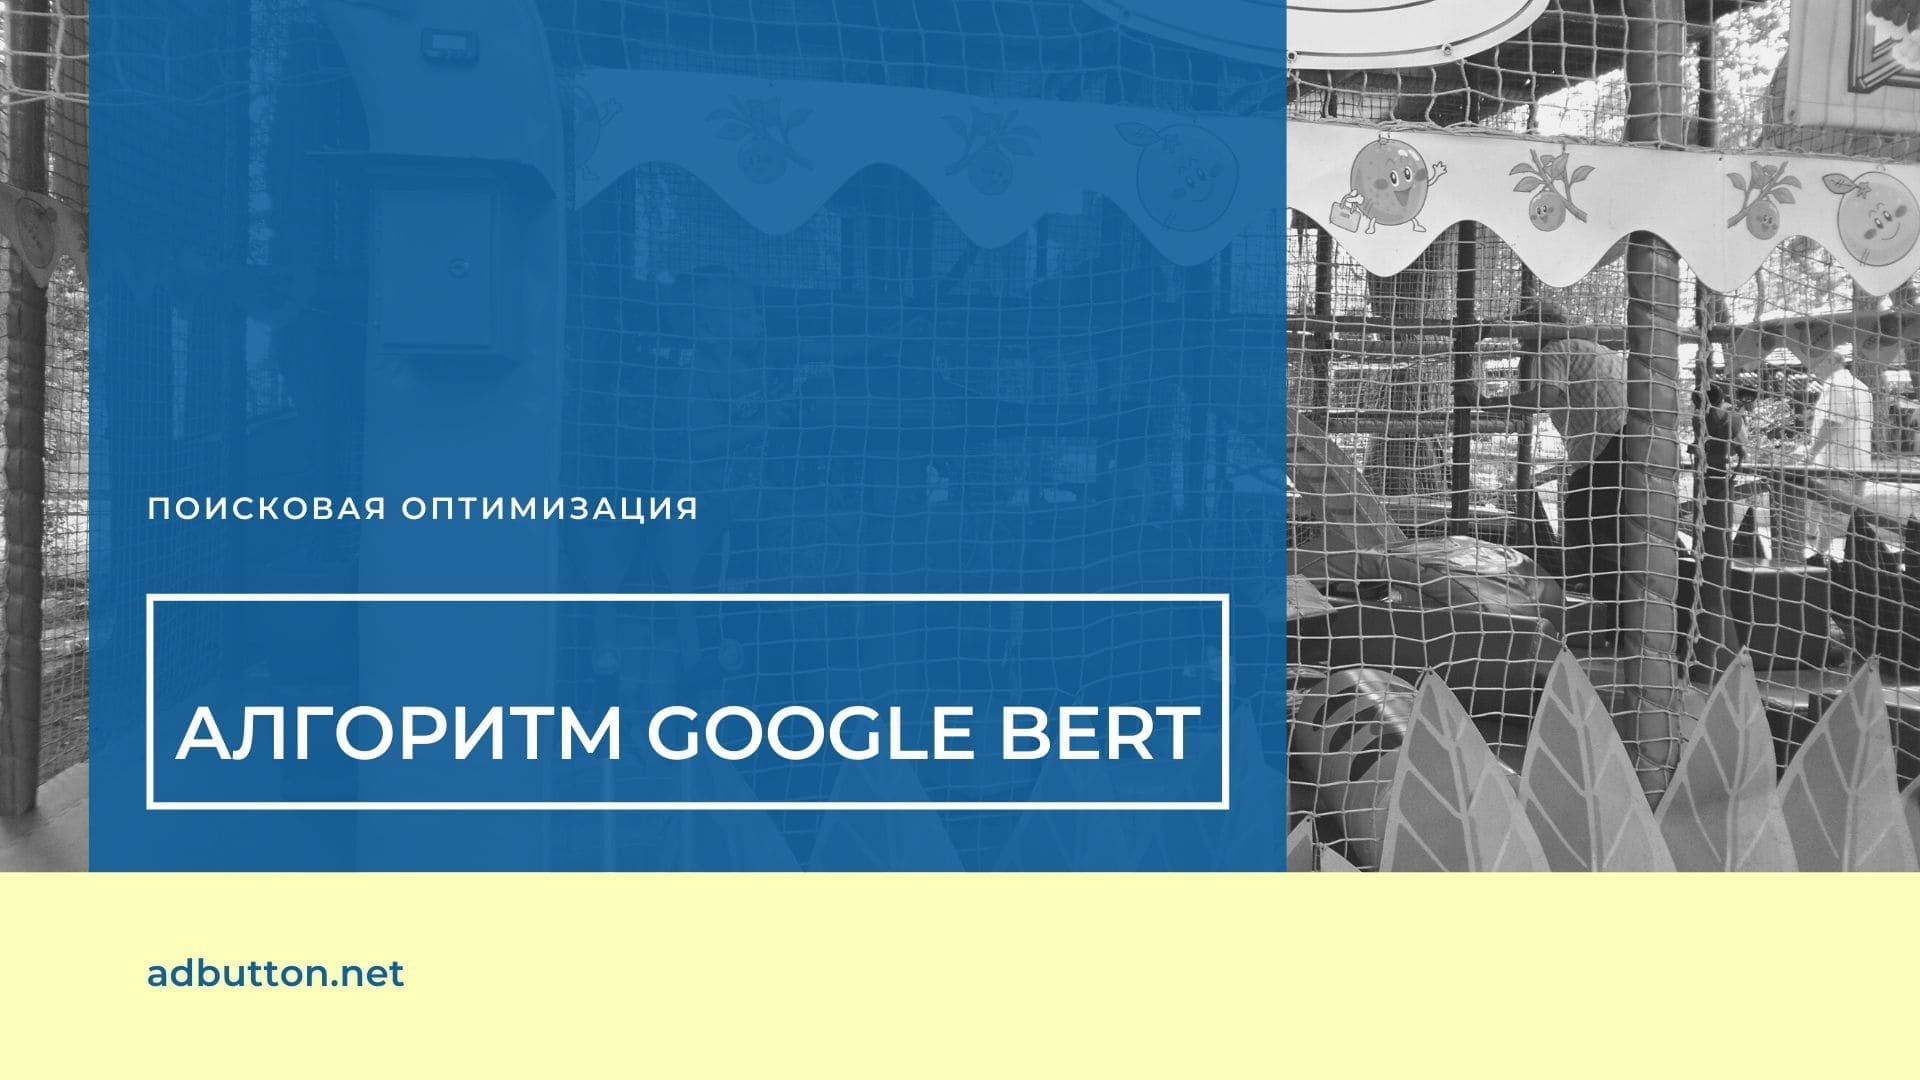 Алгоритм Google BERT — что изменилось для маркетологов и владельцев сайтов